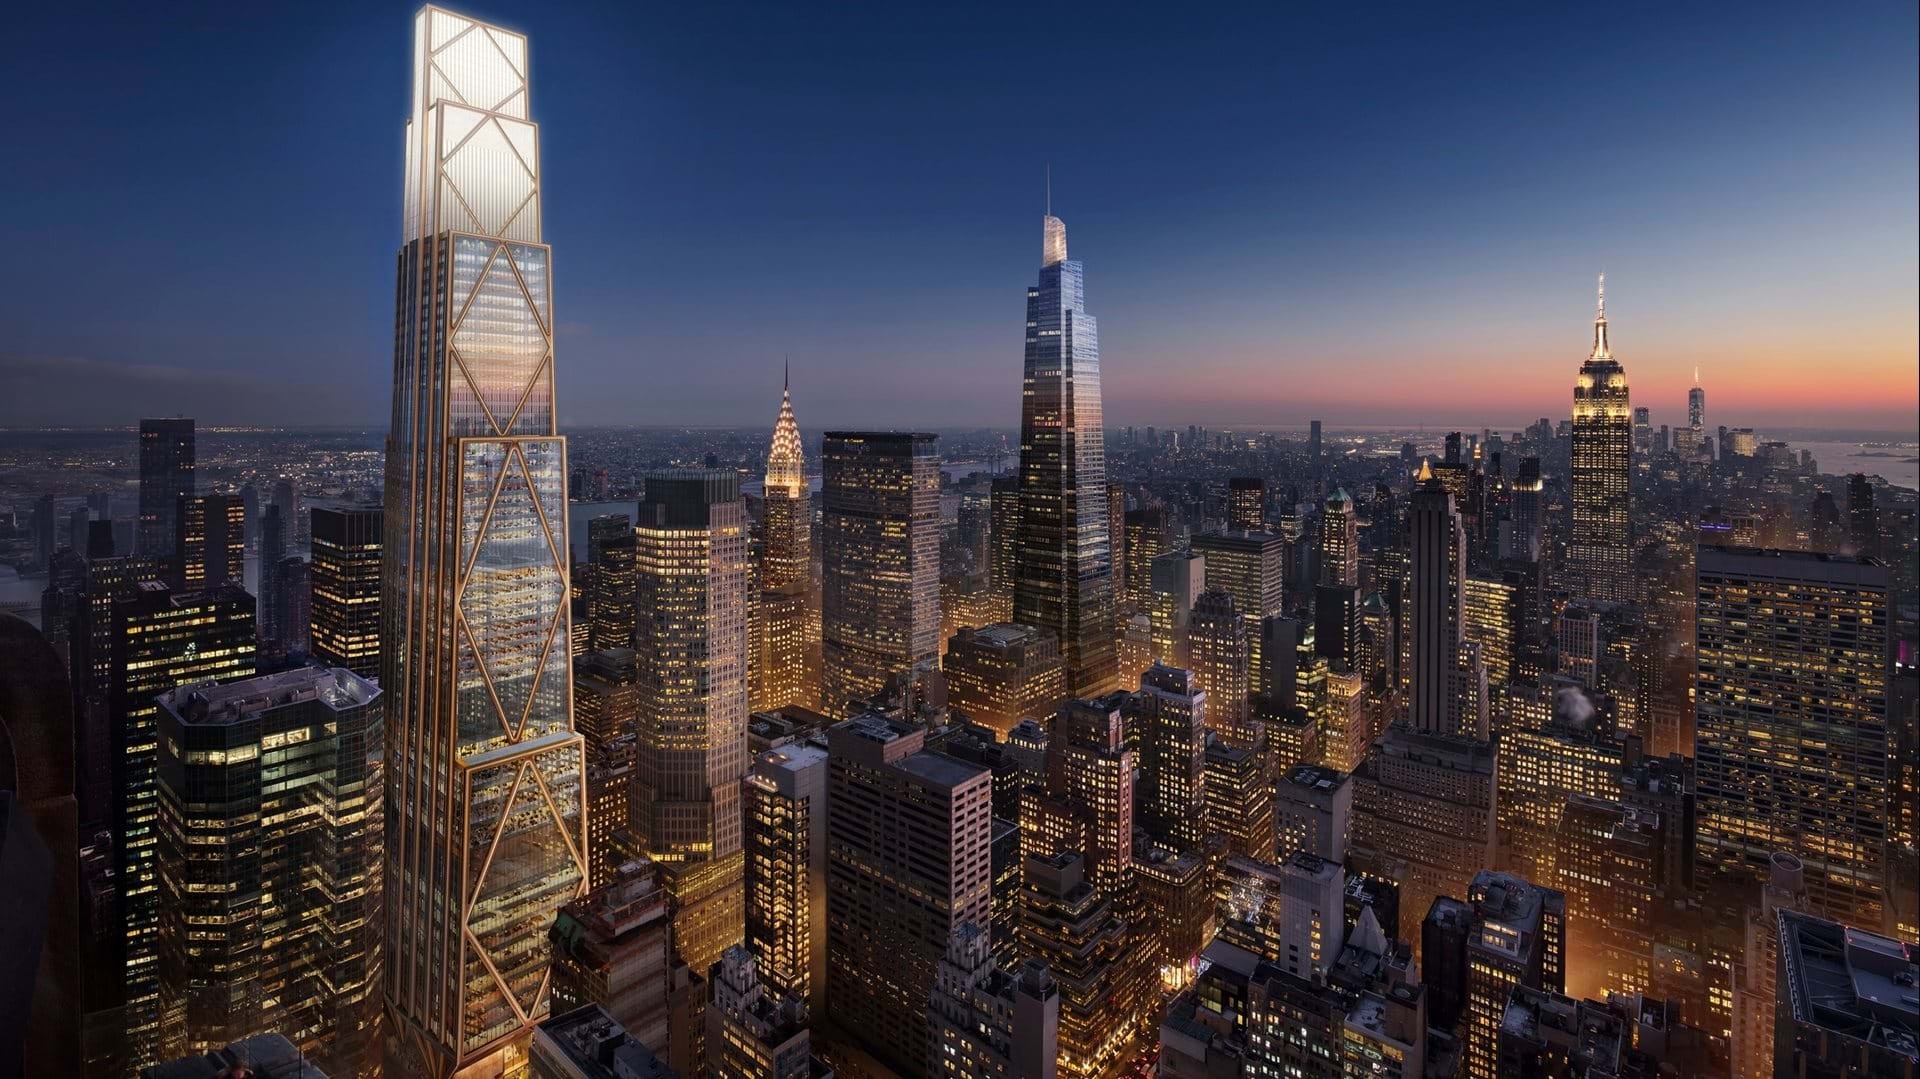 Le nouveau siège social de la banque JPMorgan Chase devrait compter 60 étages au total et atteindre une hauteur de 423 m.